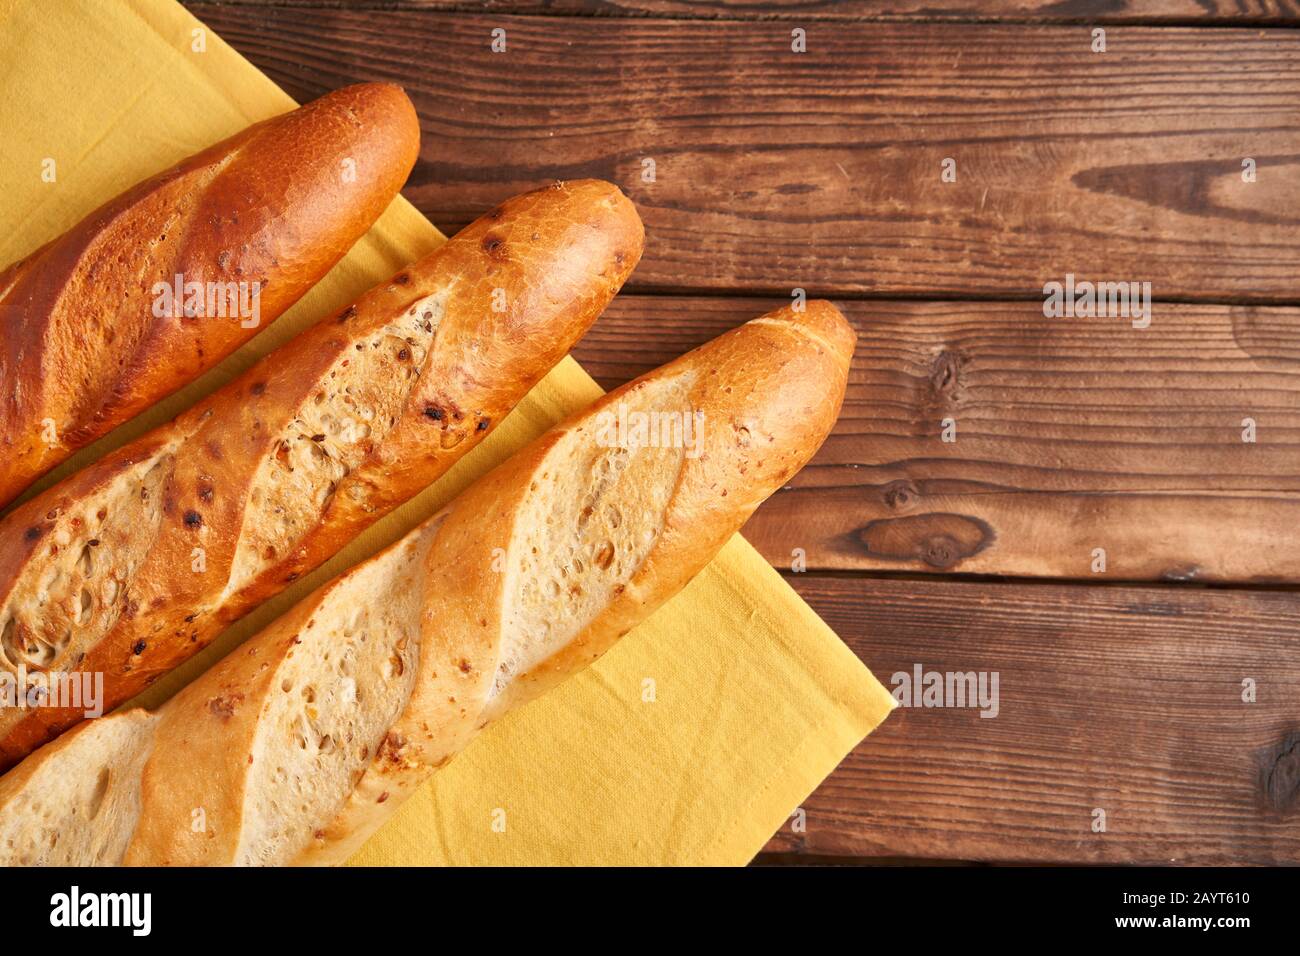 Trois baguettes françaises croustillantes sont des baguettes en tissu jaune serviette table en bois fond de baguettes en assortiment avec des graines de sésame Classic french pastri national Banque D'Images